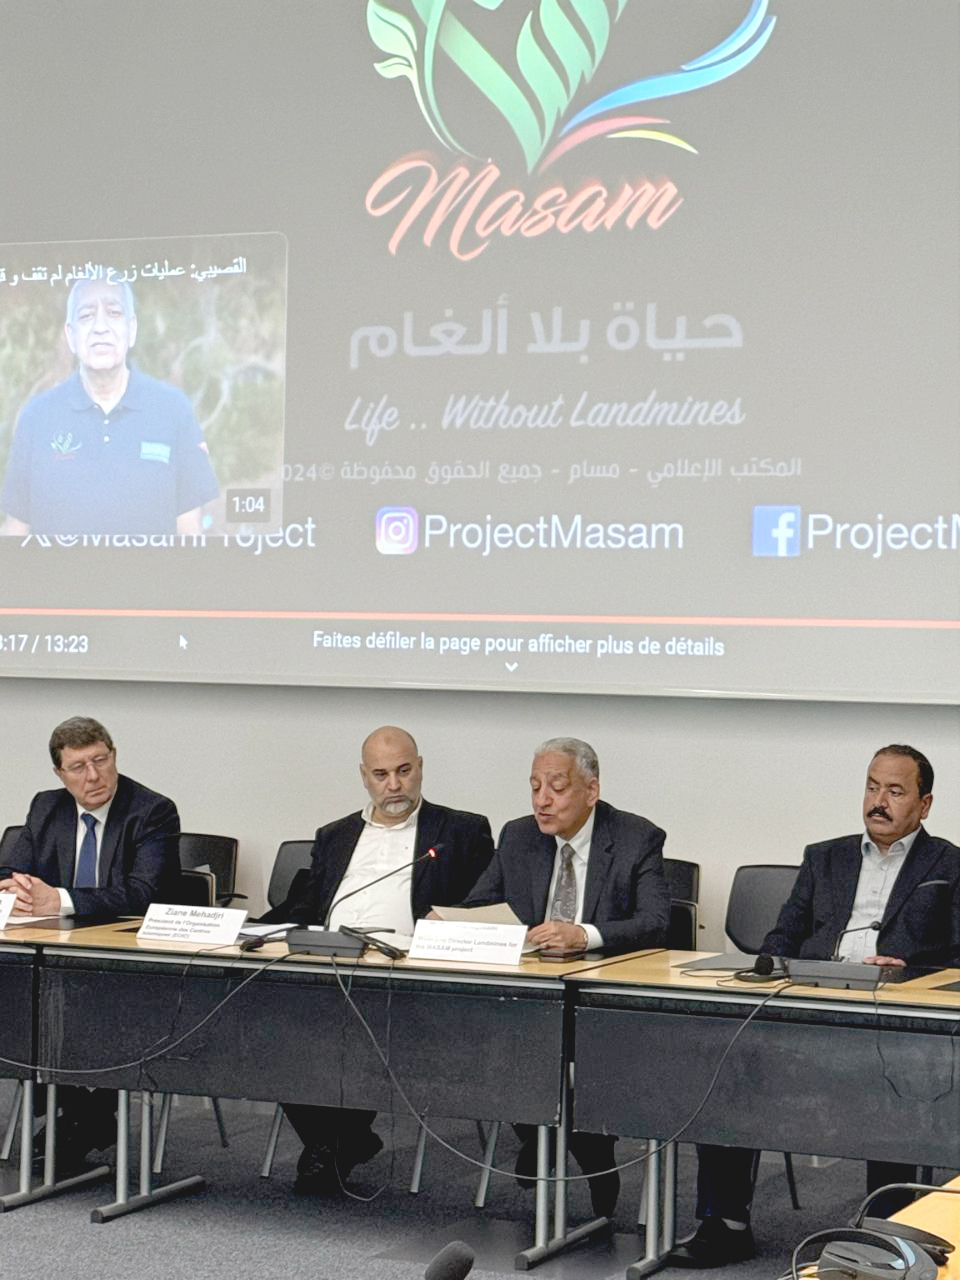 تكريم المشروع السعودي مسام في جنيف لدوره الانساني باليمن